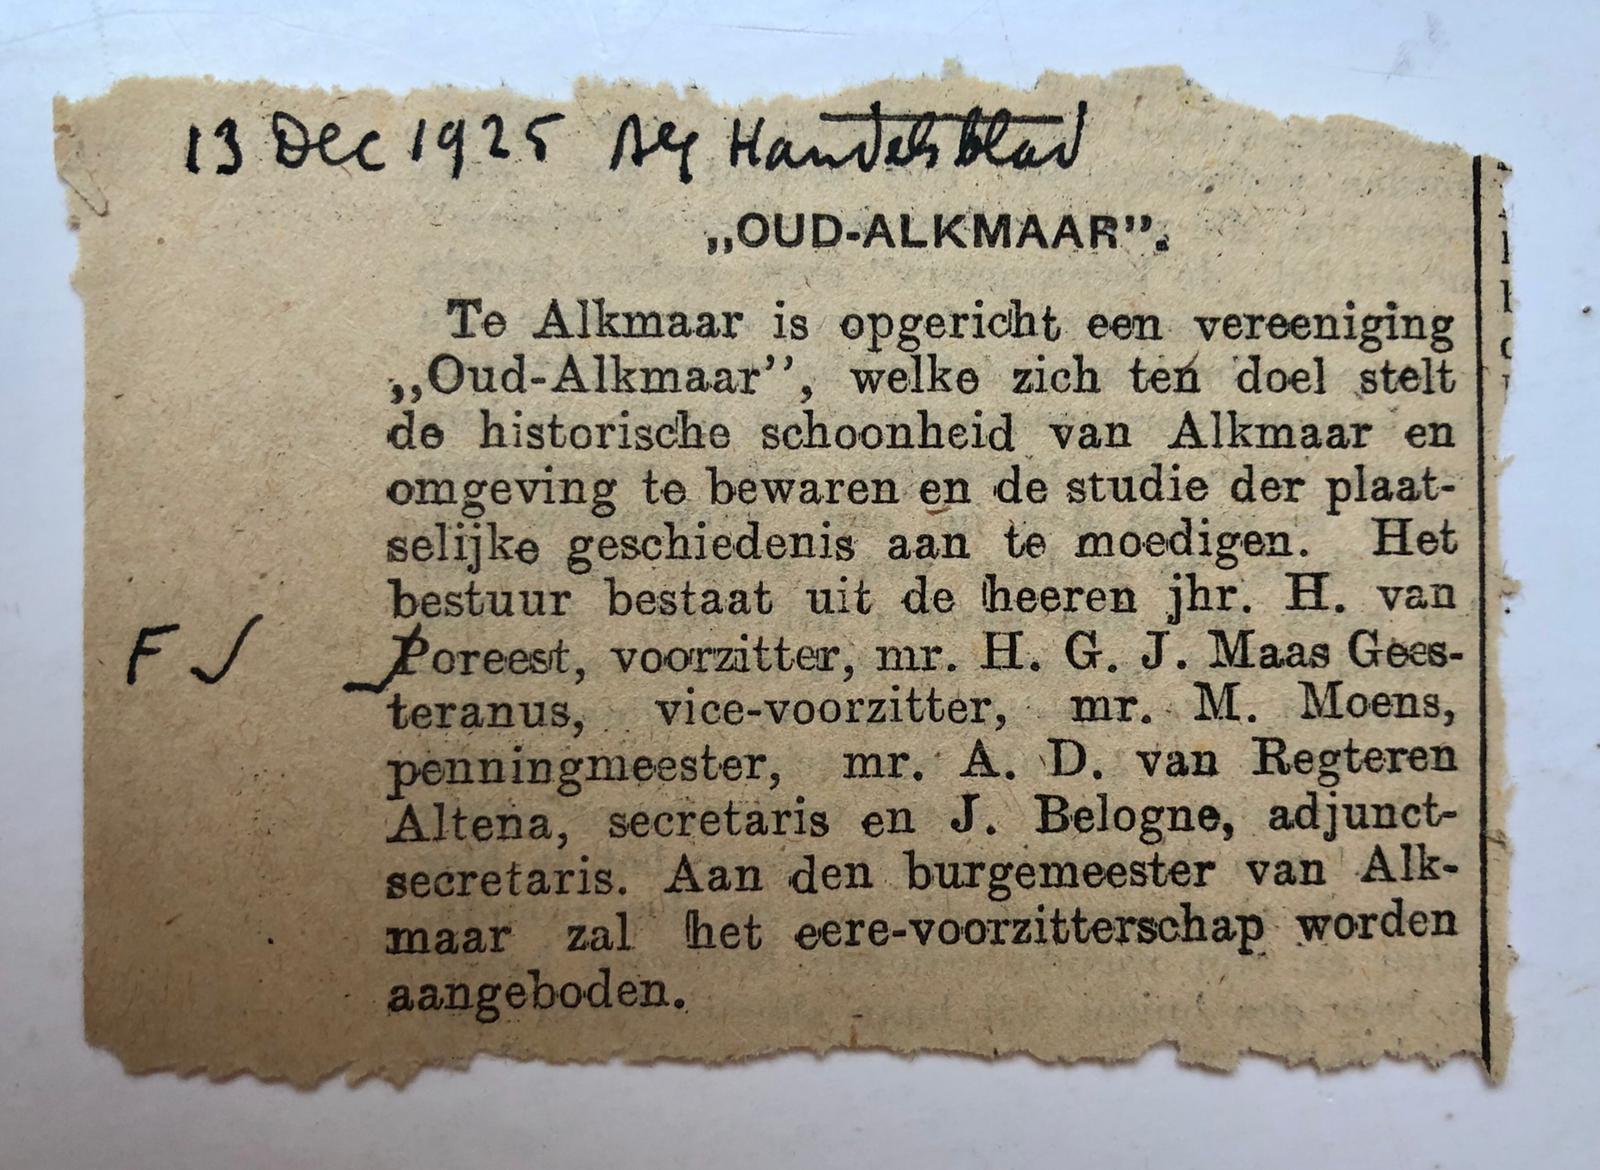  - [Newspaper article] ALKMAAR Krantenberichtje uit Algemeen Handelsblad, 13 december 1925, betr. oprichting van de vereniging `Oud-Alkmaar'. 1 stuk.